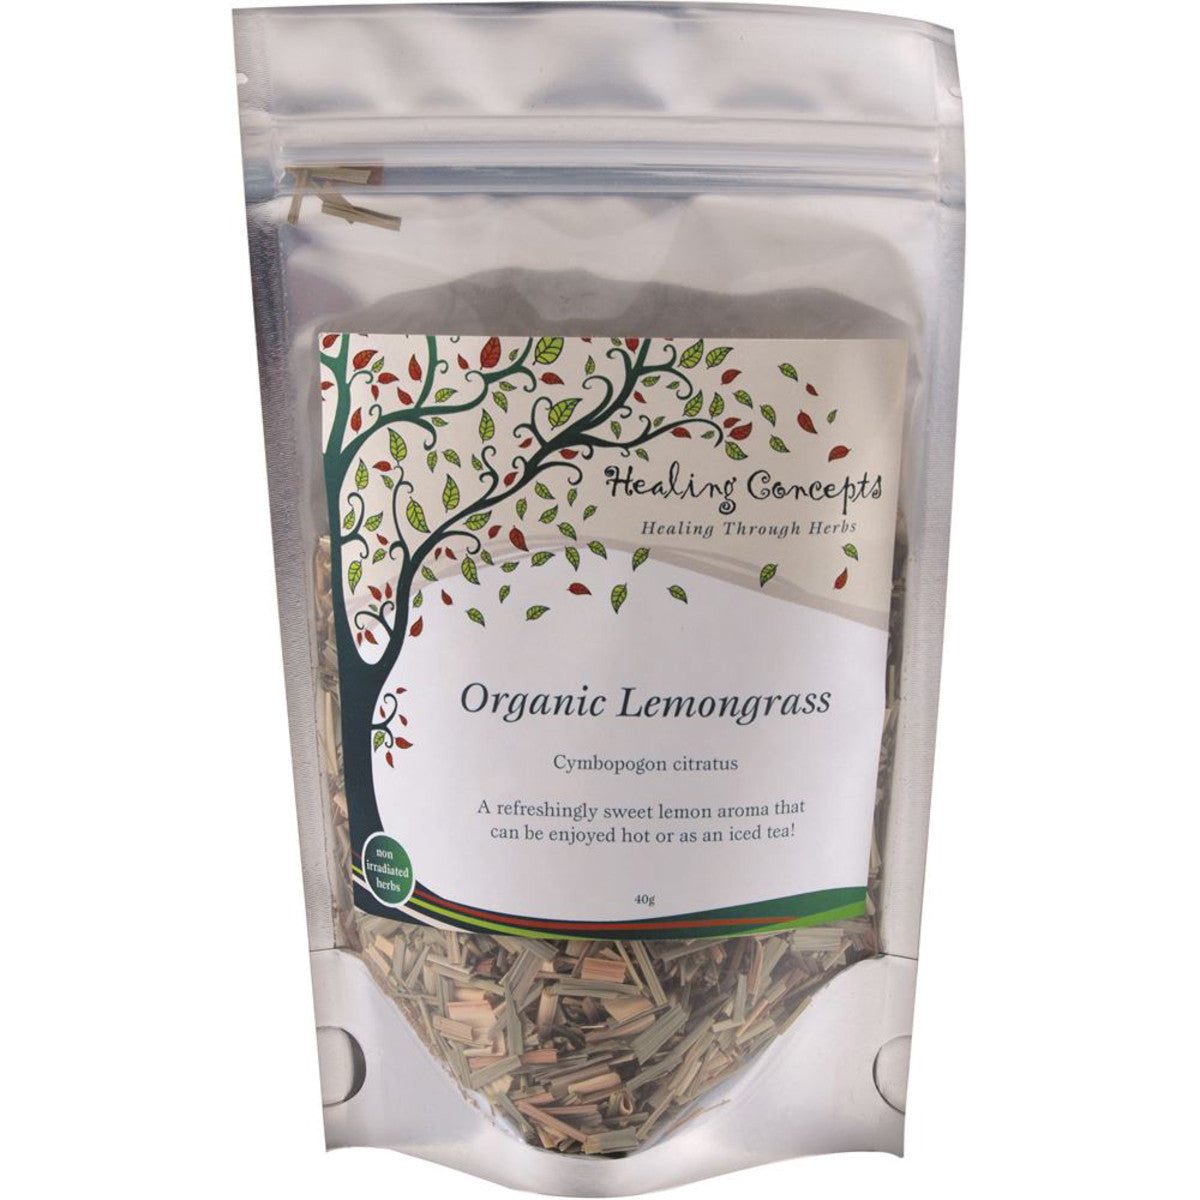 Healing Concepts Lemon Grass Tea 40g, Certified Organic